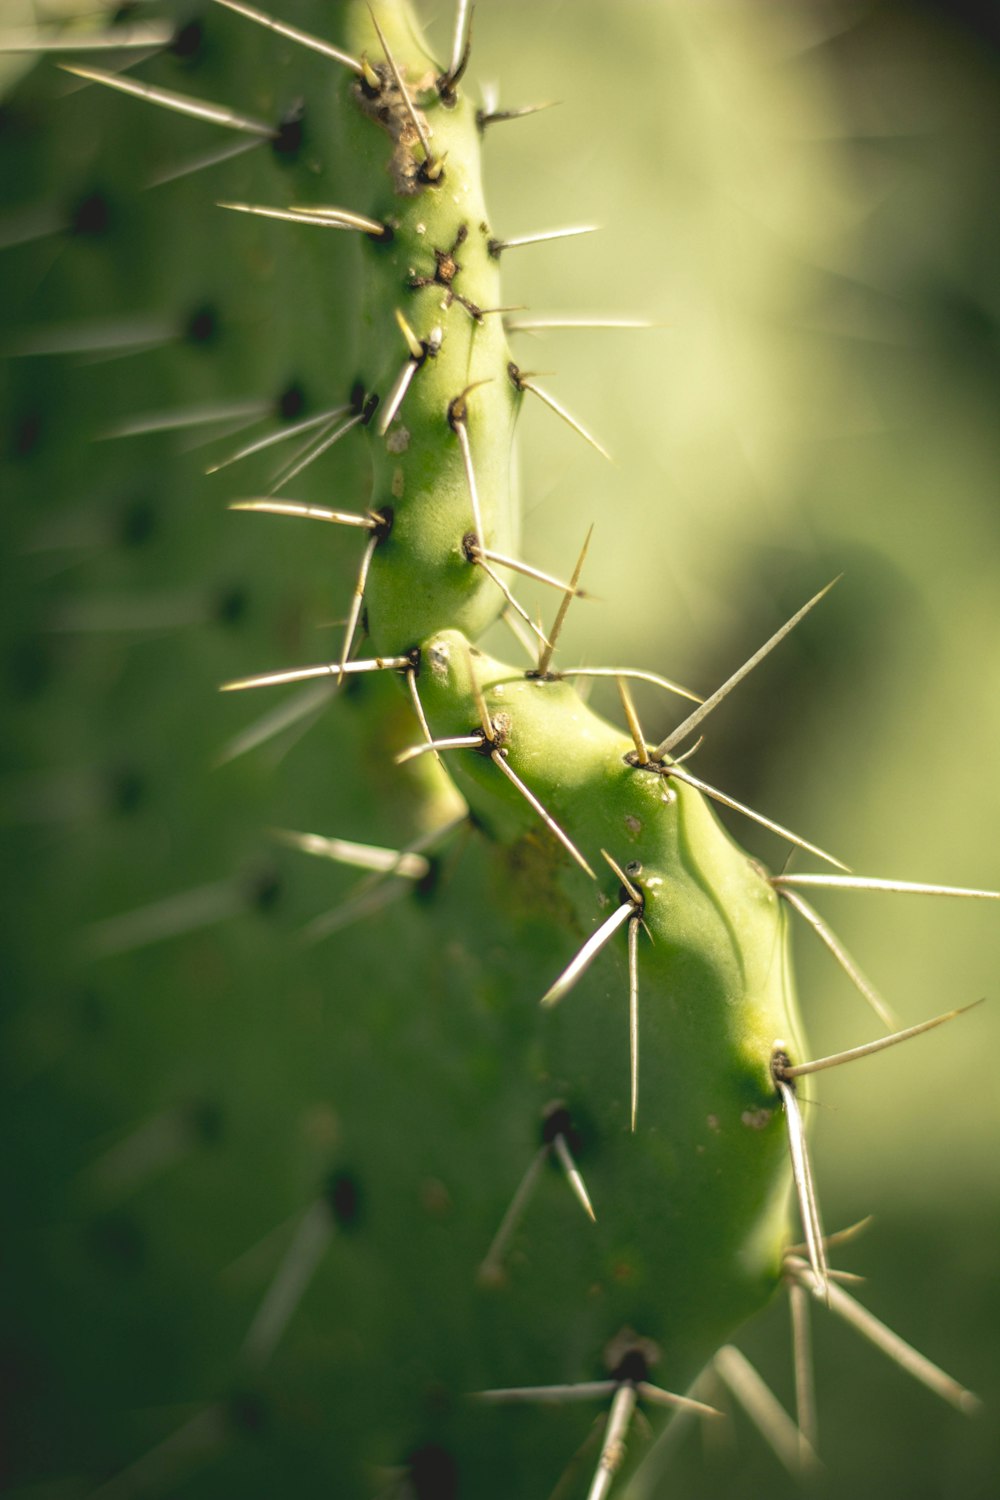 closeup photography of cactus